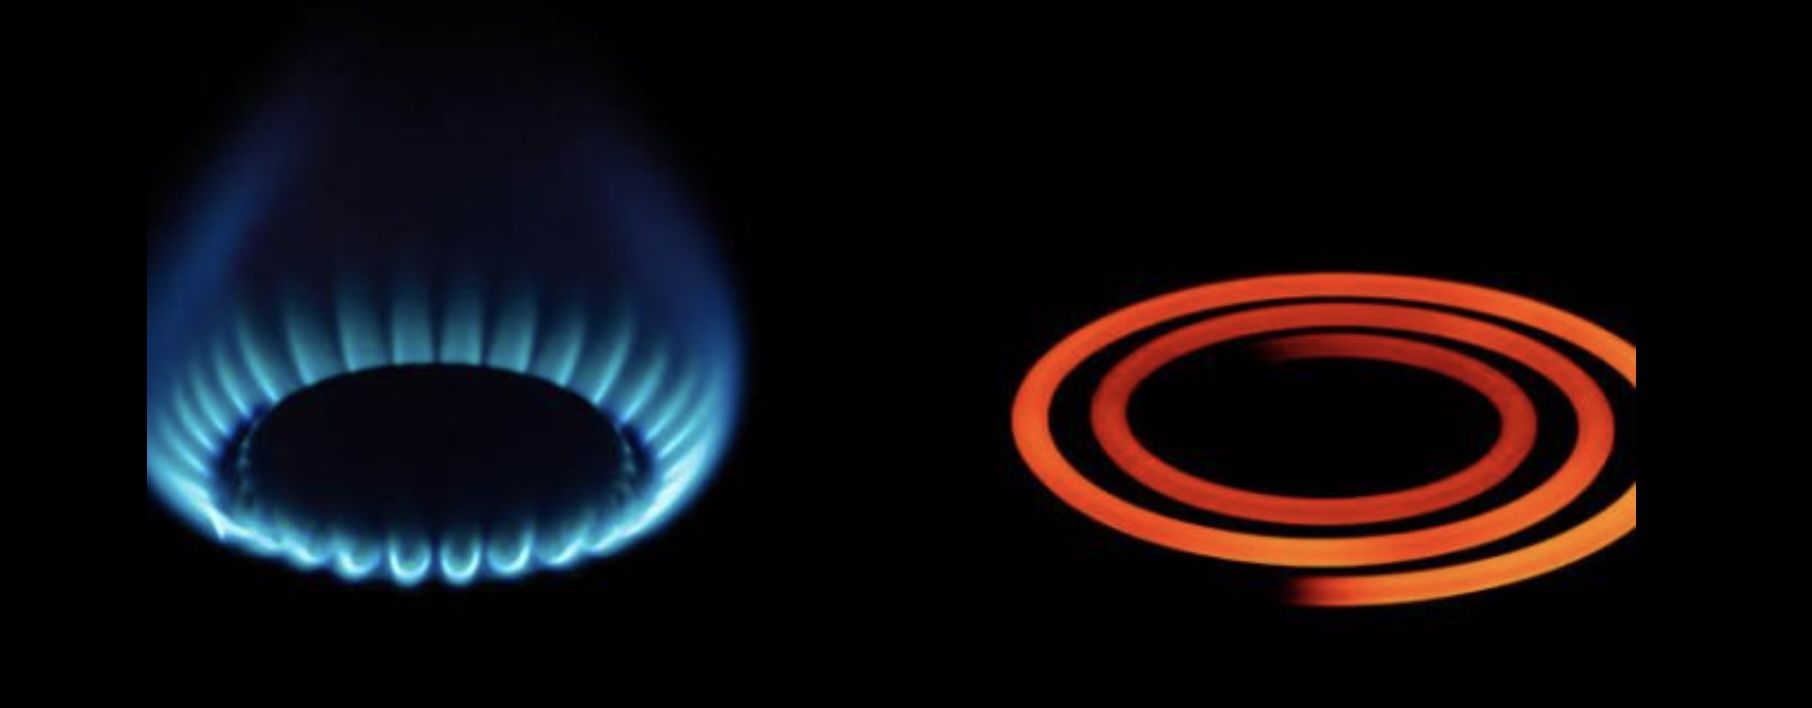 Teure Ersatzversorgung bei Gas und Strom – was kann man da tun?